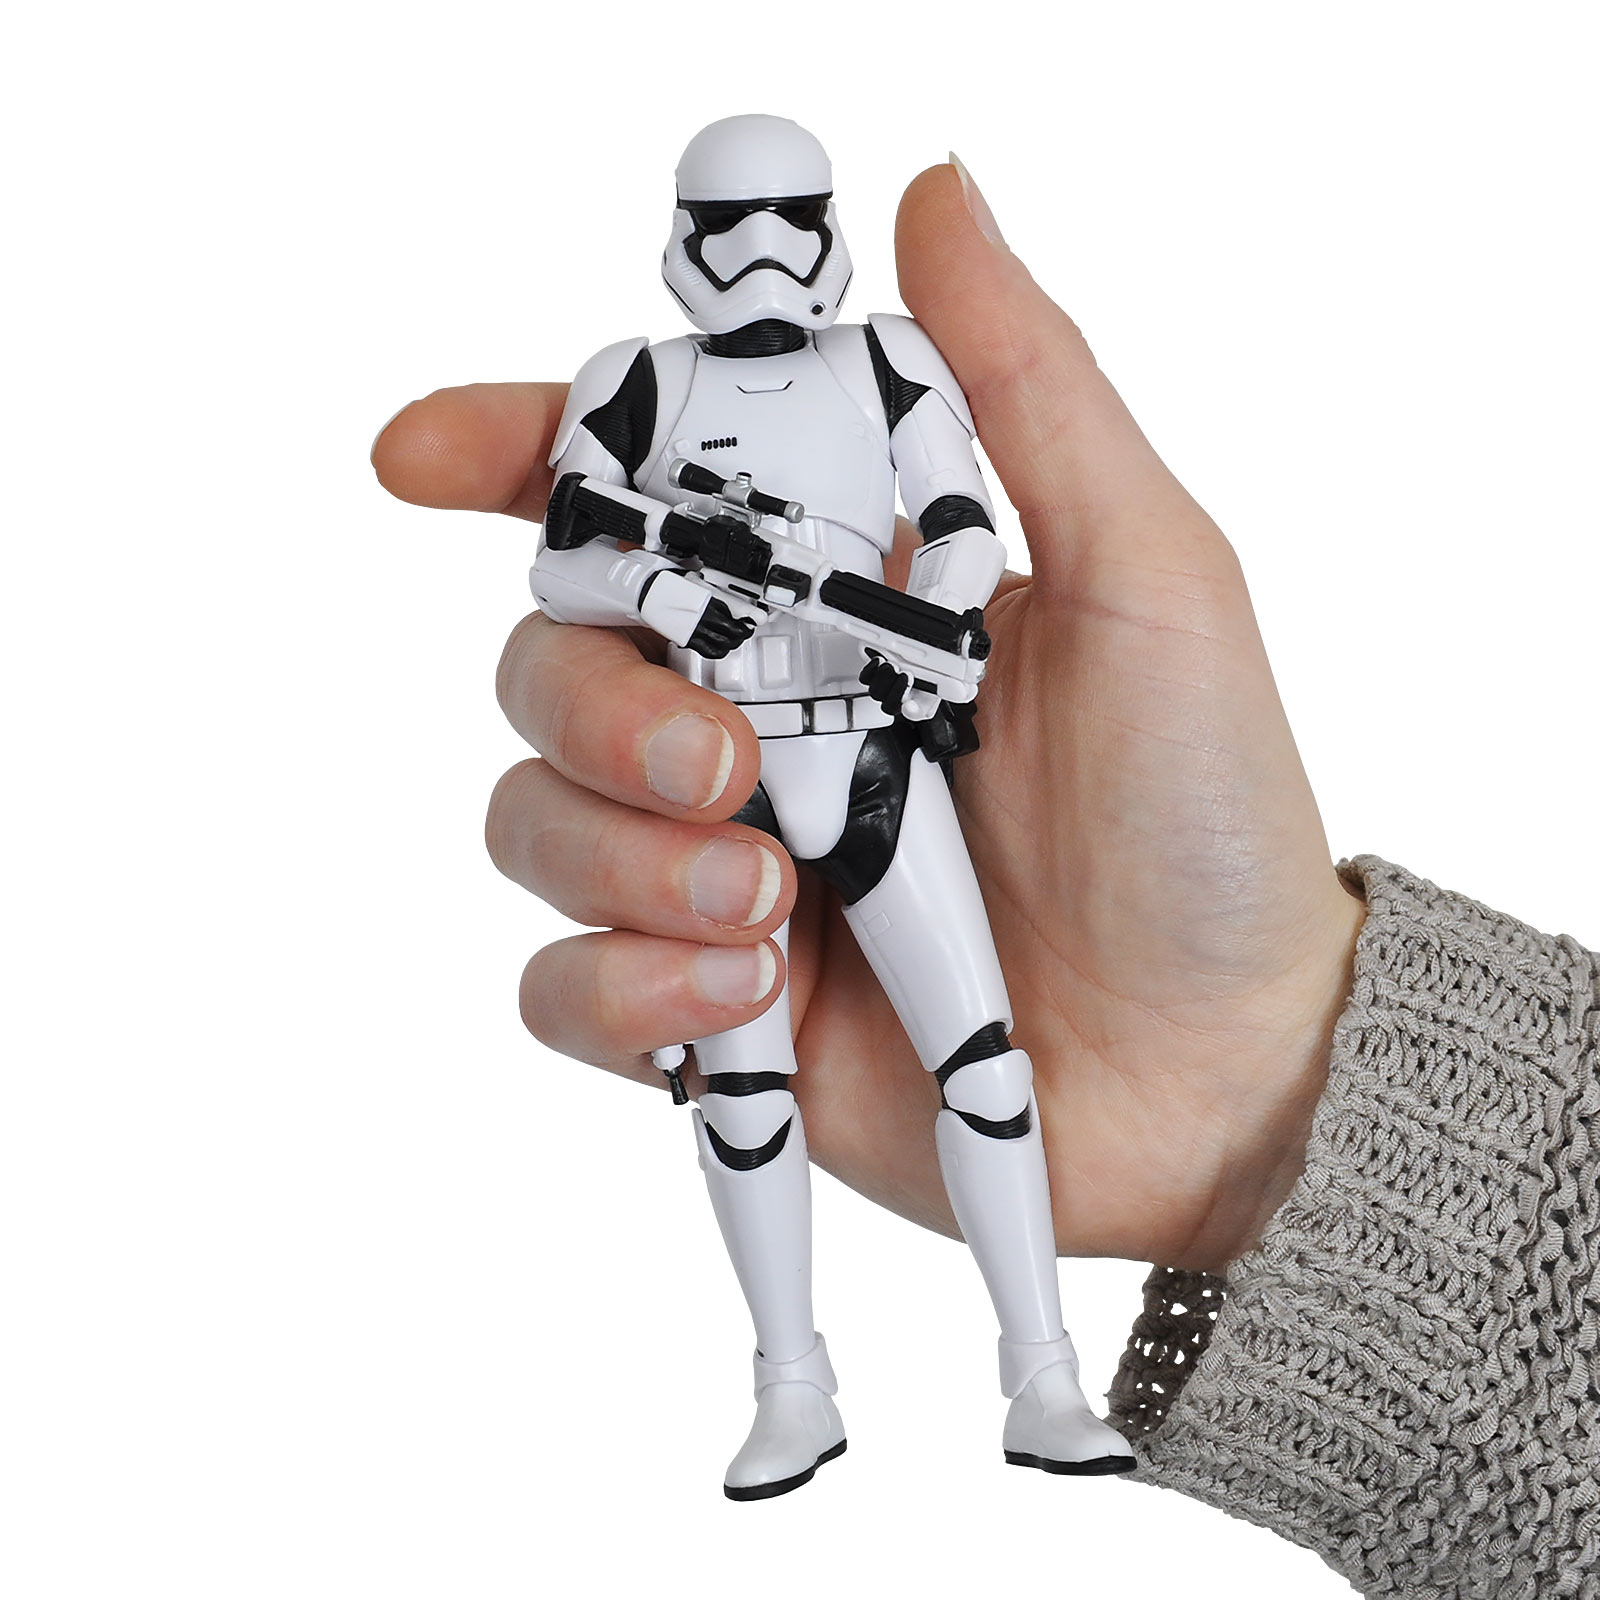 Star Wars - First Order Stormtrooper Figures Set